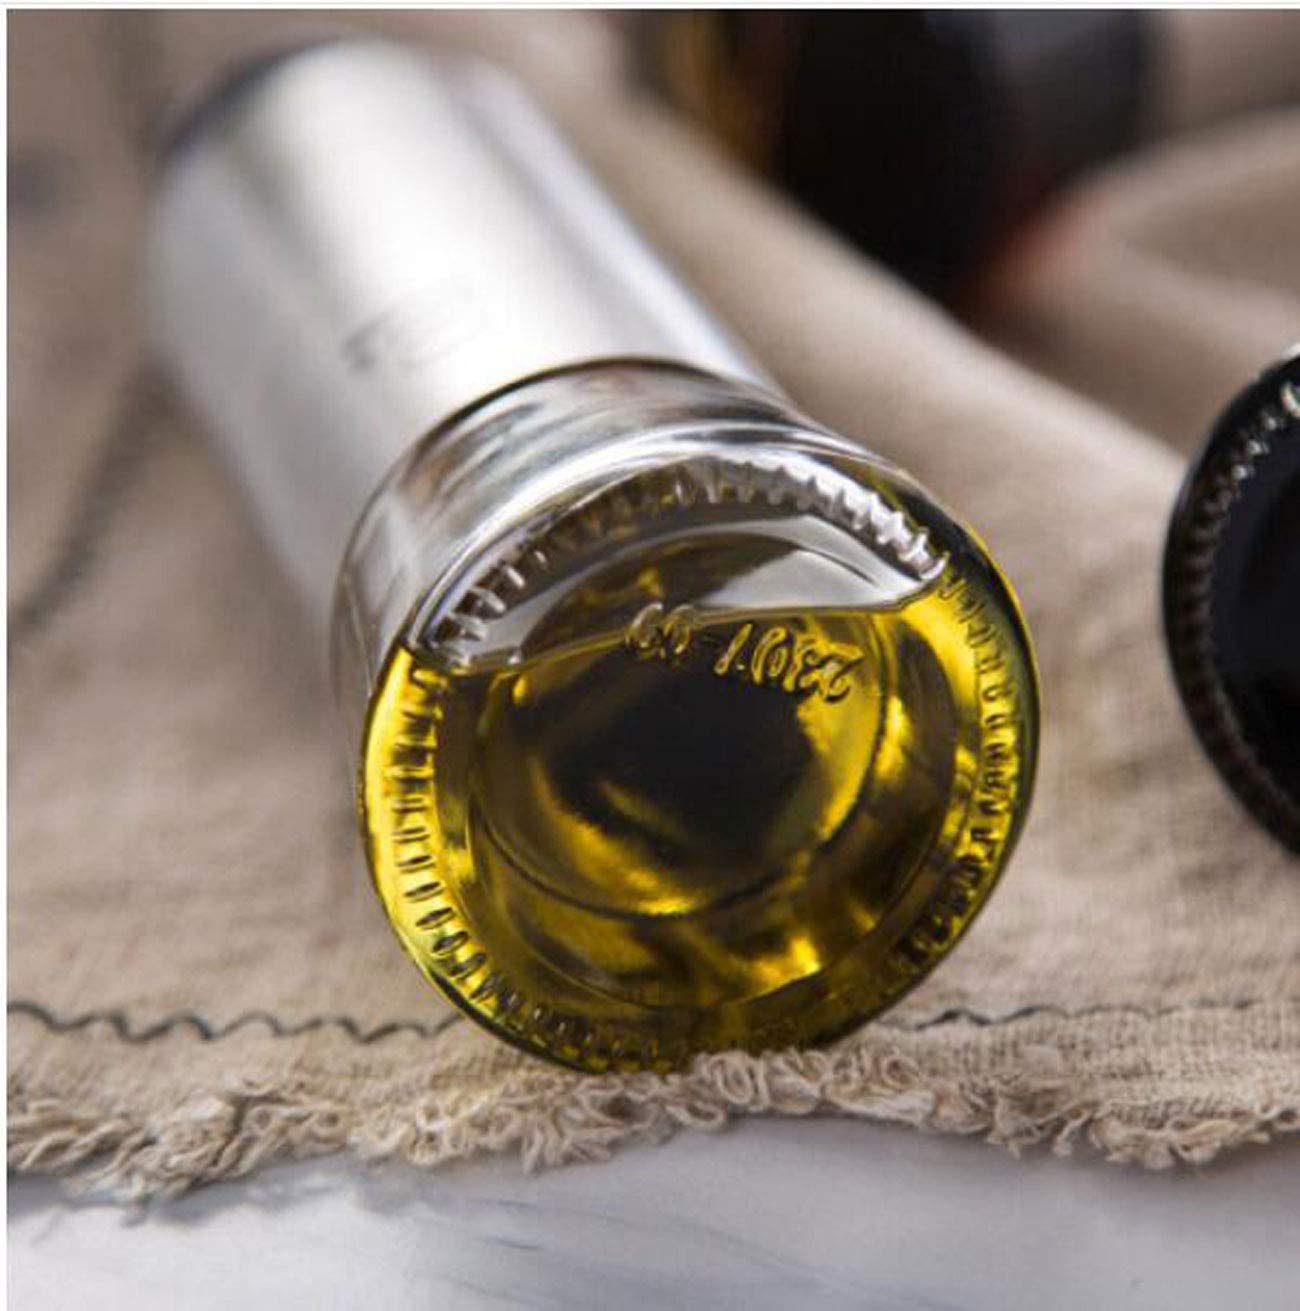 Spout Oil & Vinegar Dispenser Bottles